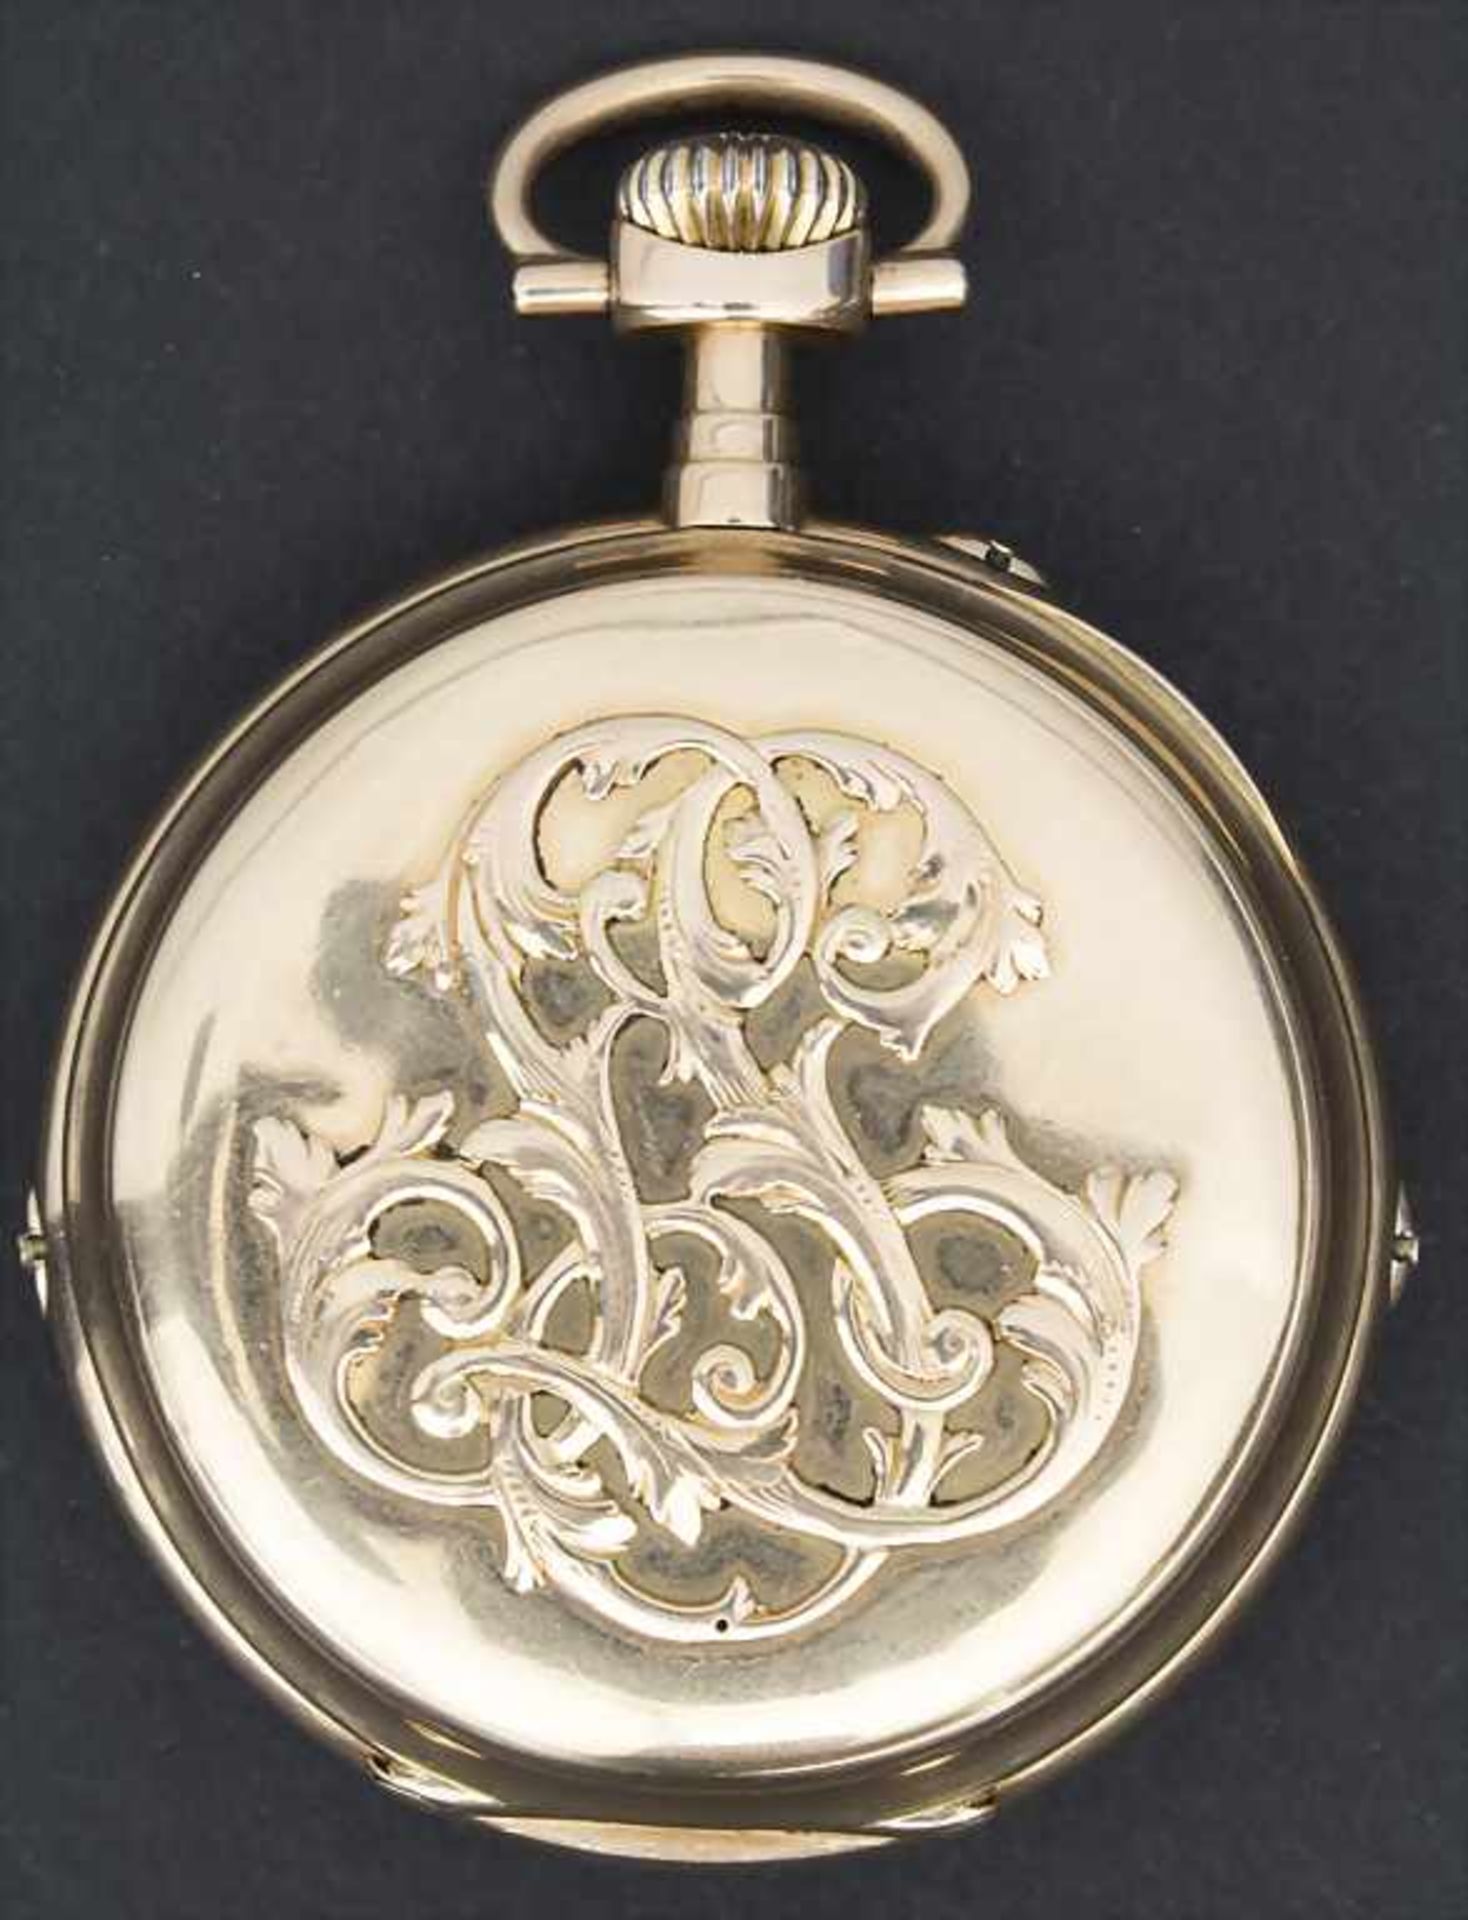 Offene Taschenuhr / A pocket watch, Schweiz/Swiss, um 1890 - Image 2 of 6